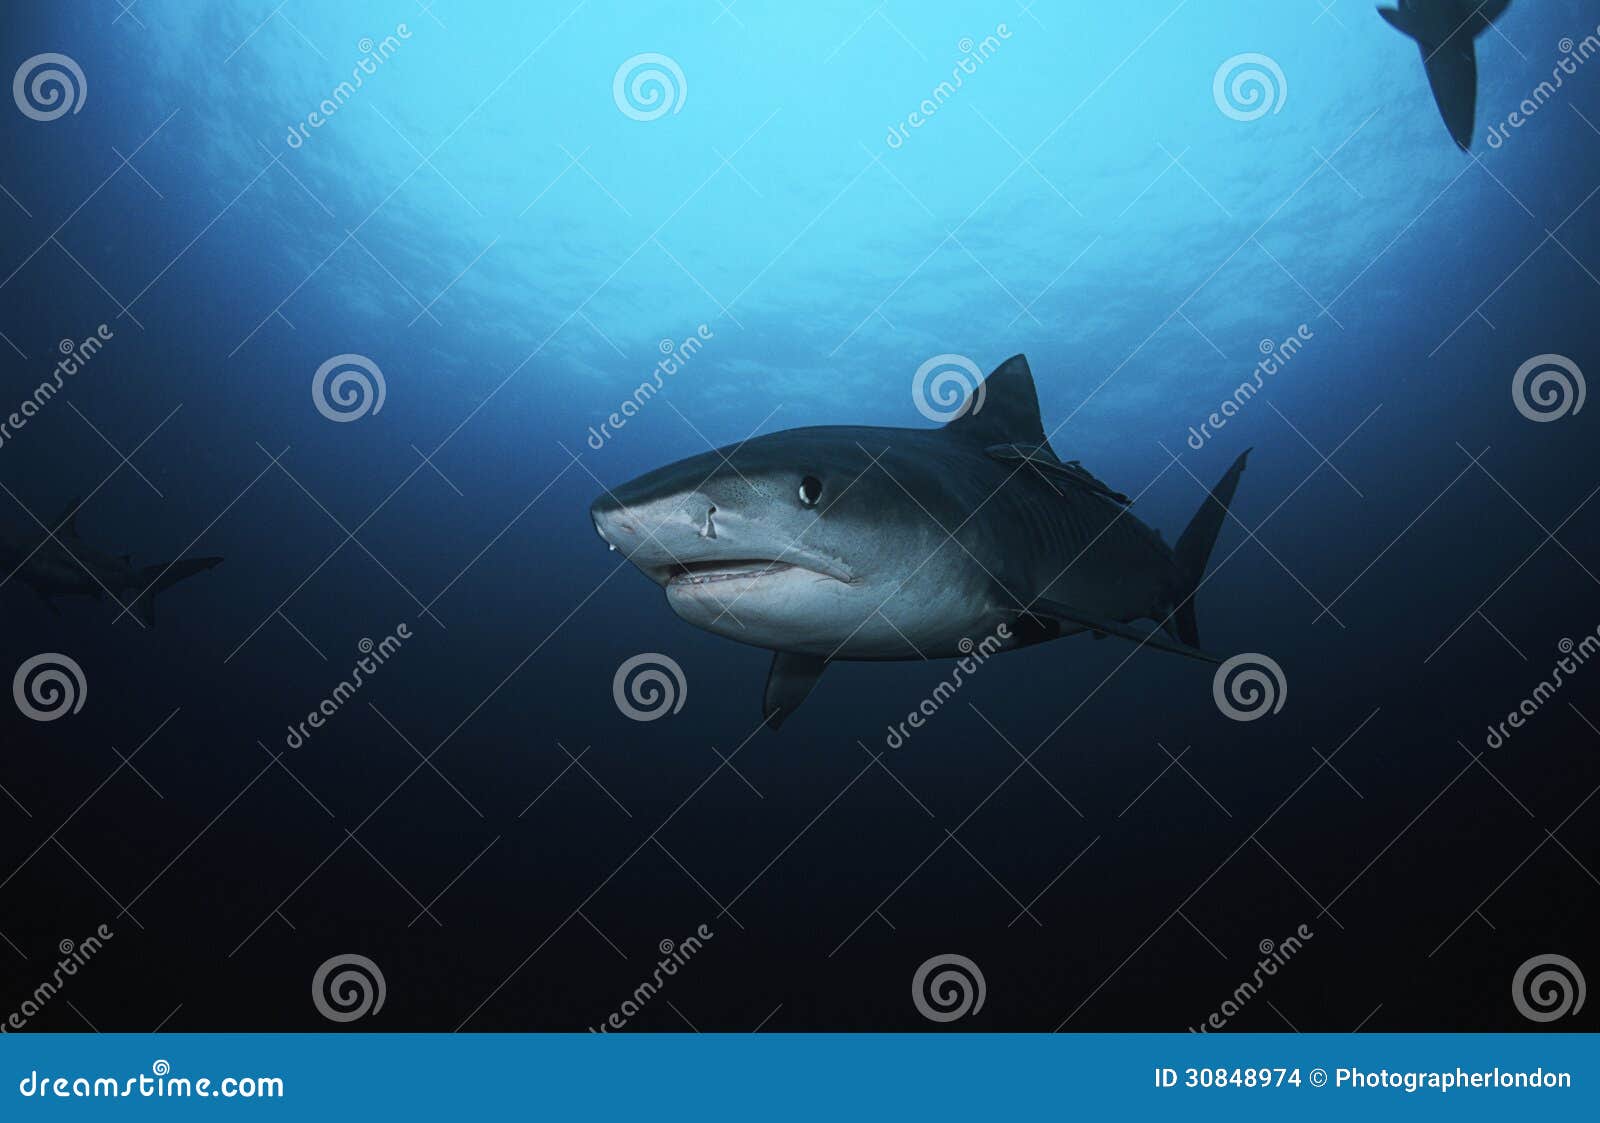 虎鲨侧视图 库存图片. 图片 包括有 种类, 有机体, 敌意, 水下, 海水, 海运, 野生生物, 食肉动物 - 63753953